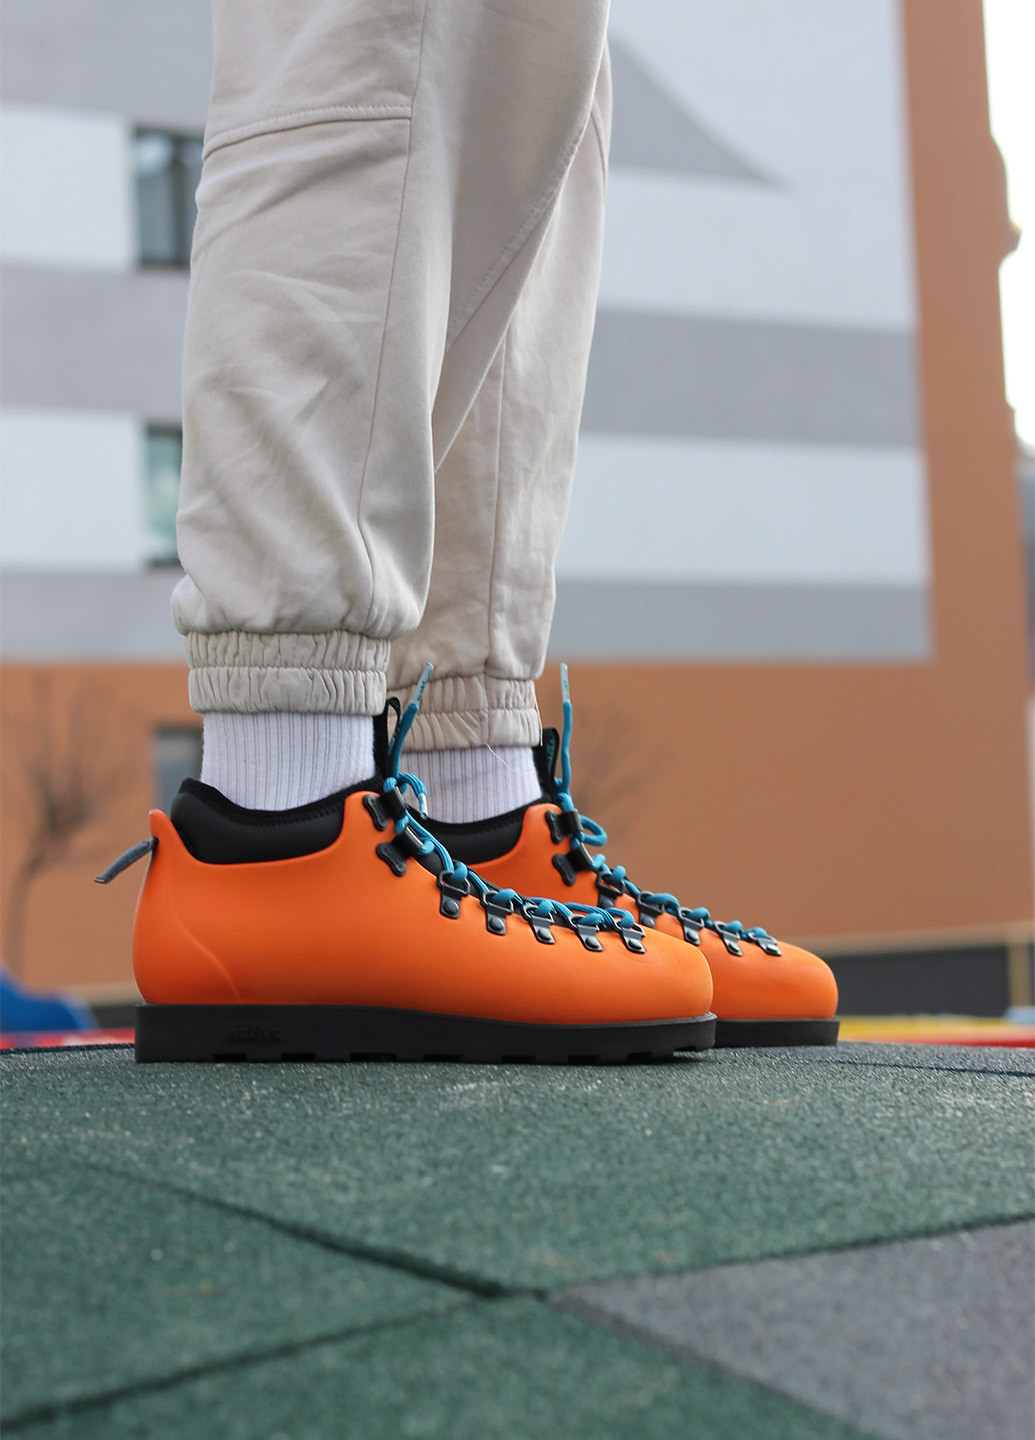 Оранжевые зимние ботинки Native